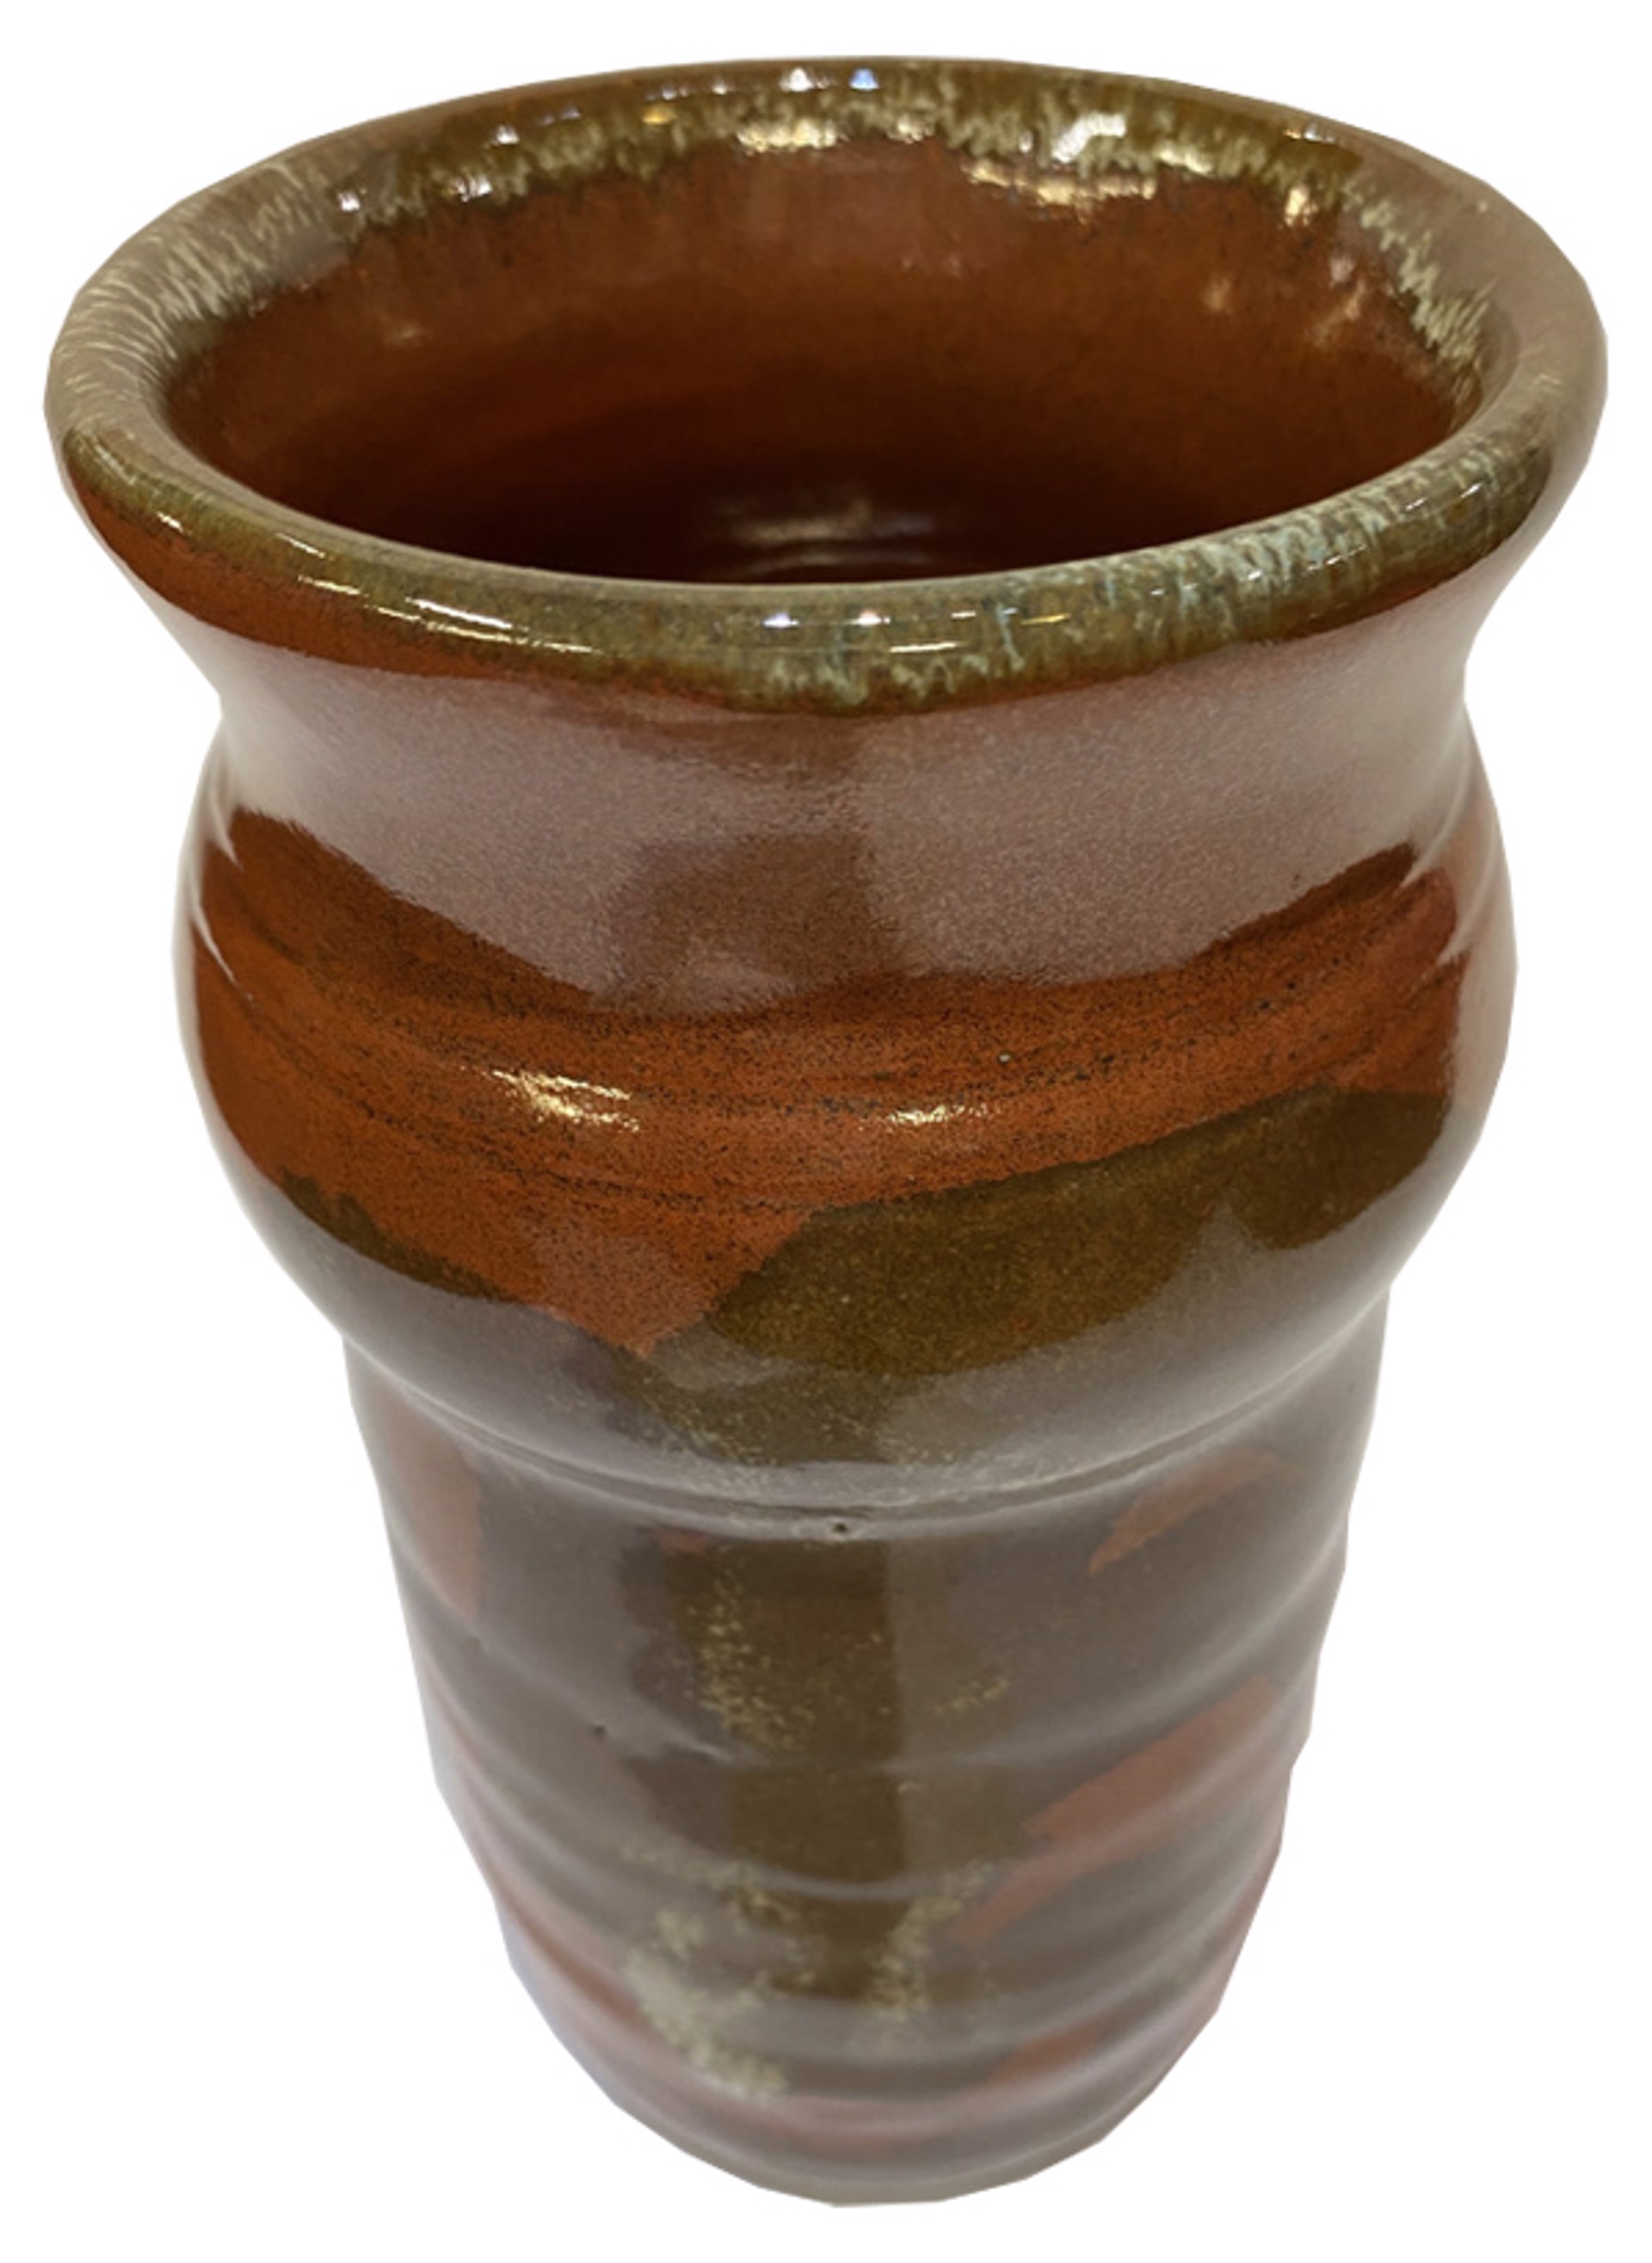 Ceramic Vase by Paul Nash